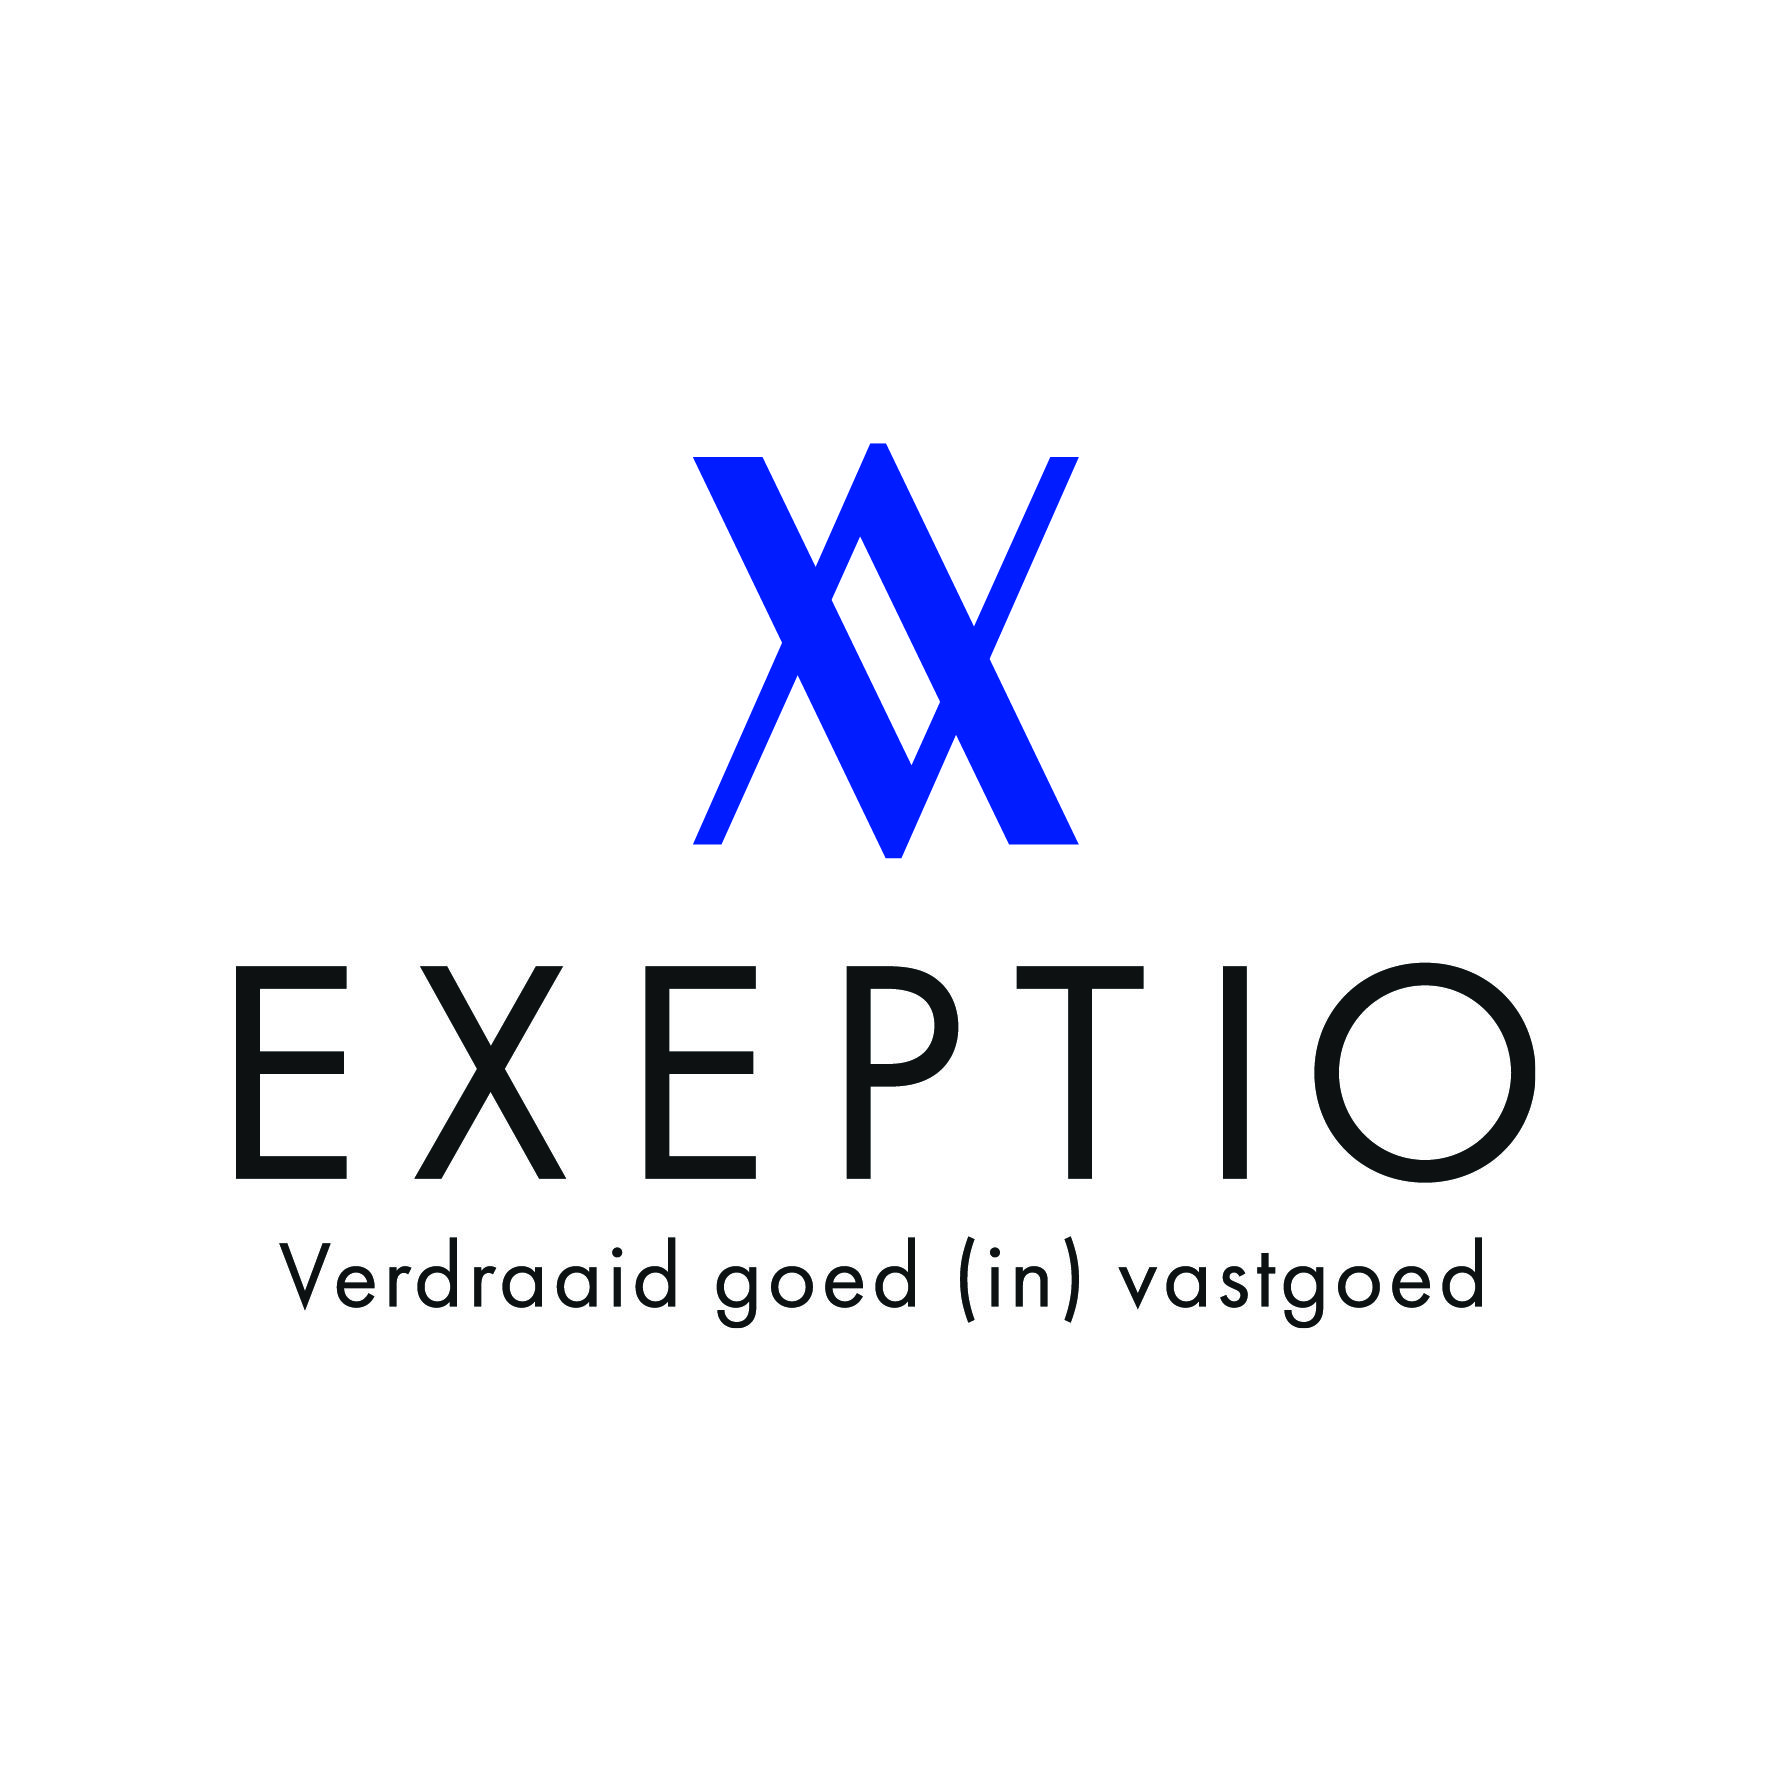 Exeptio